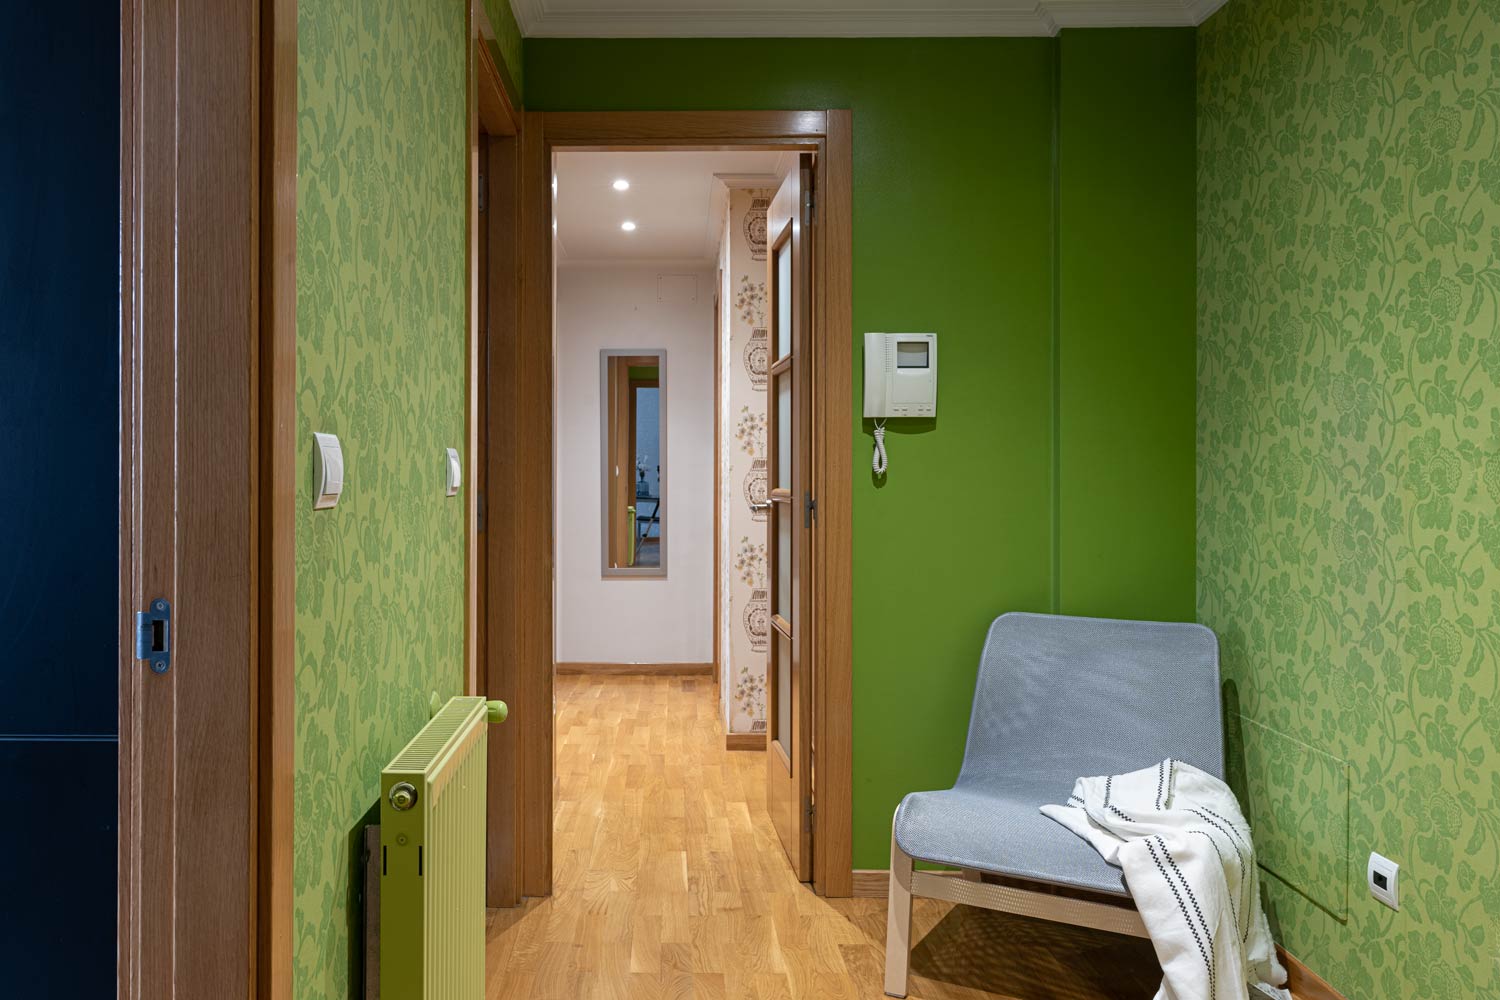 Recibidor en piso Rúa Betanzos_pintura y papel pintado verdes + silla_ Al fondo, el pasillo de las habitaciones y un espejo